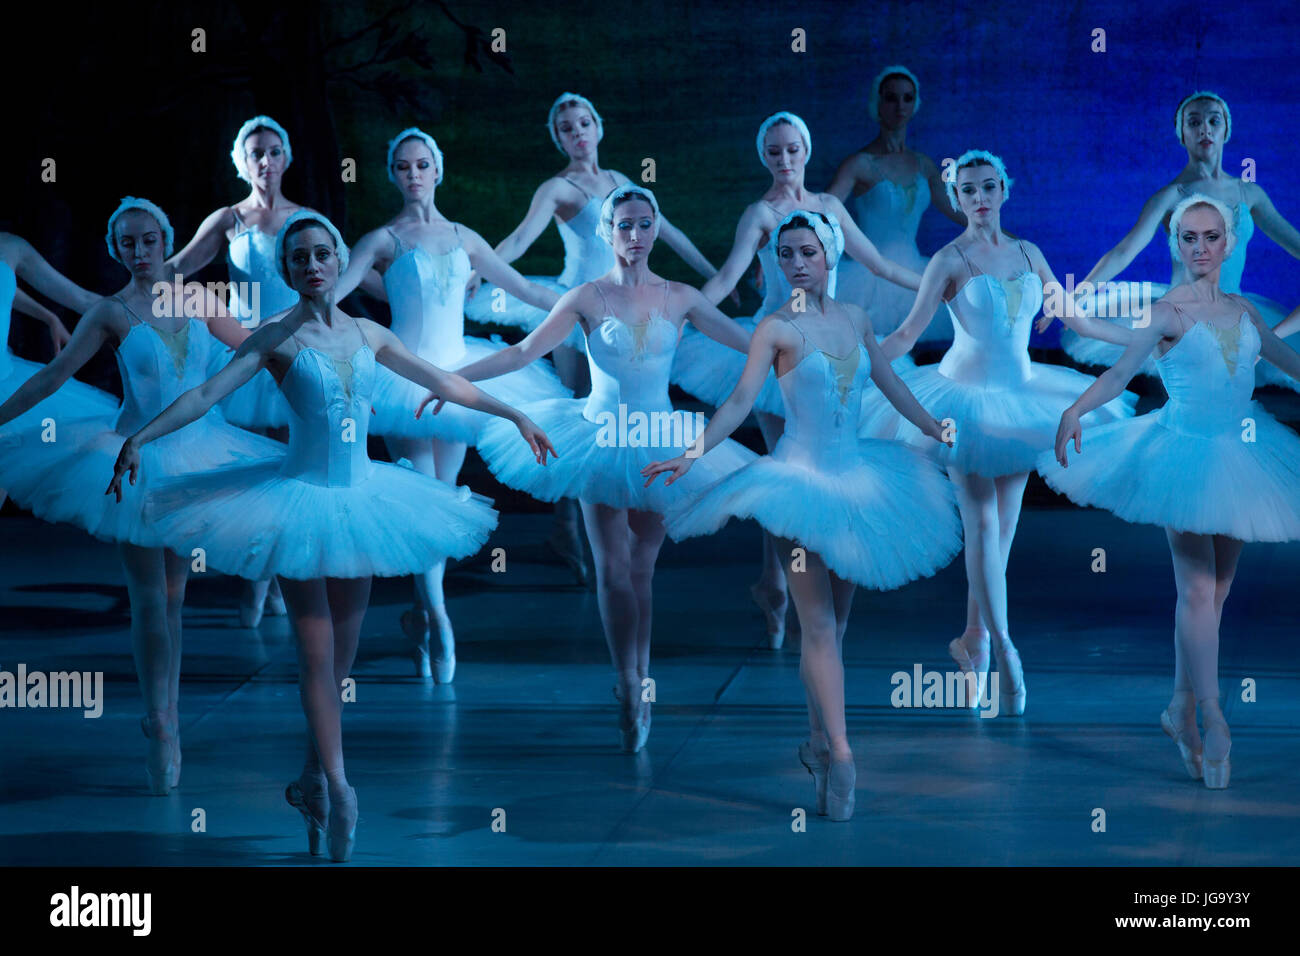 Szene aus dem Ballett "Schwanensee" von der Theatergruppe Woronesch Oper  und Ballett auf die Bühne in Moskau, Russland Stockfotografie - Alamy